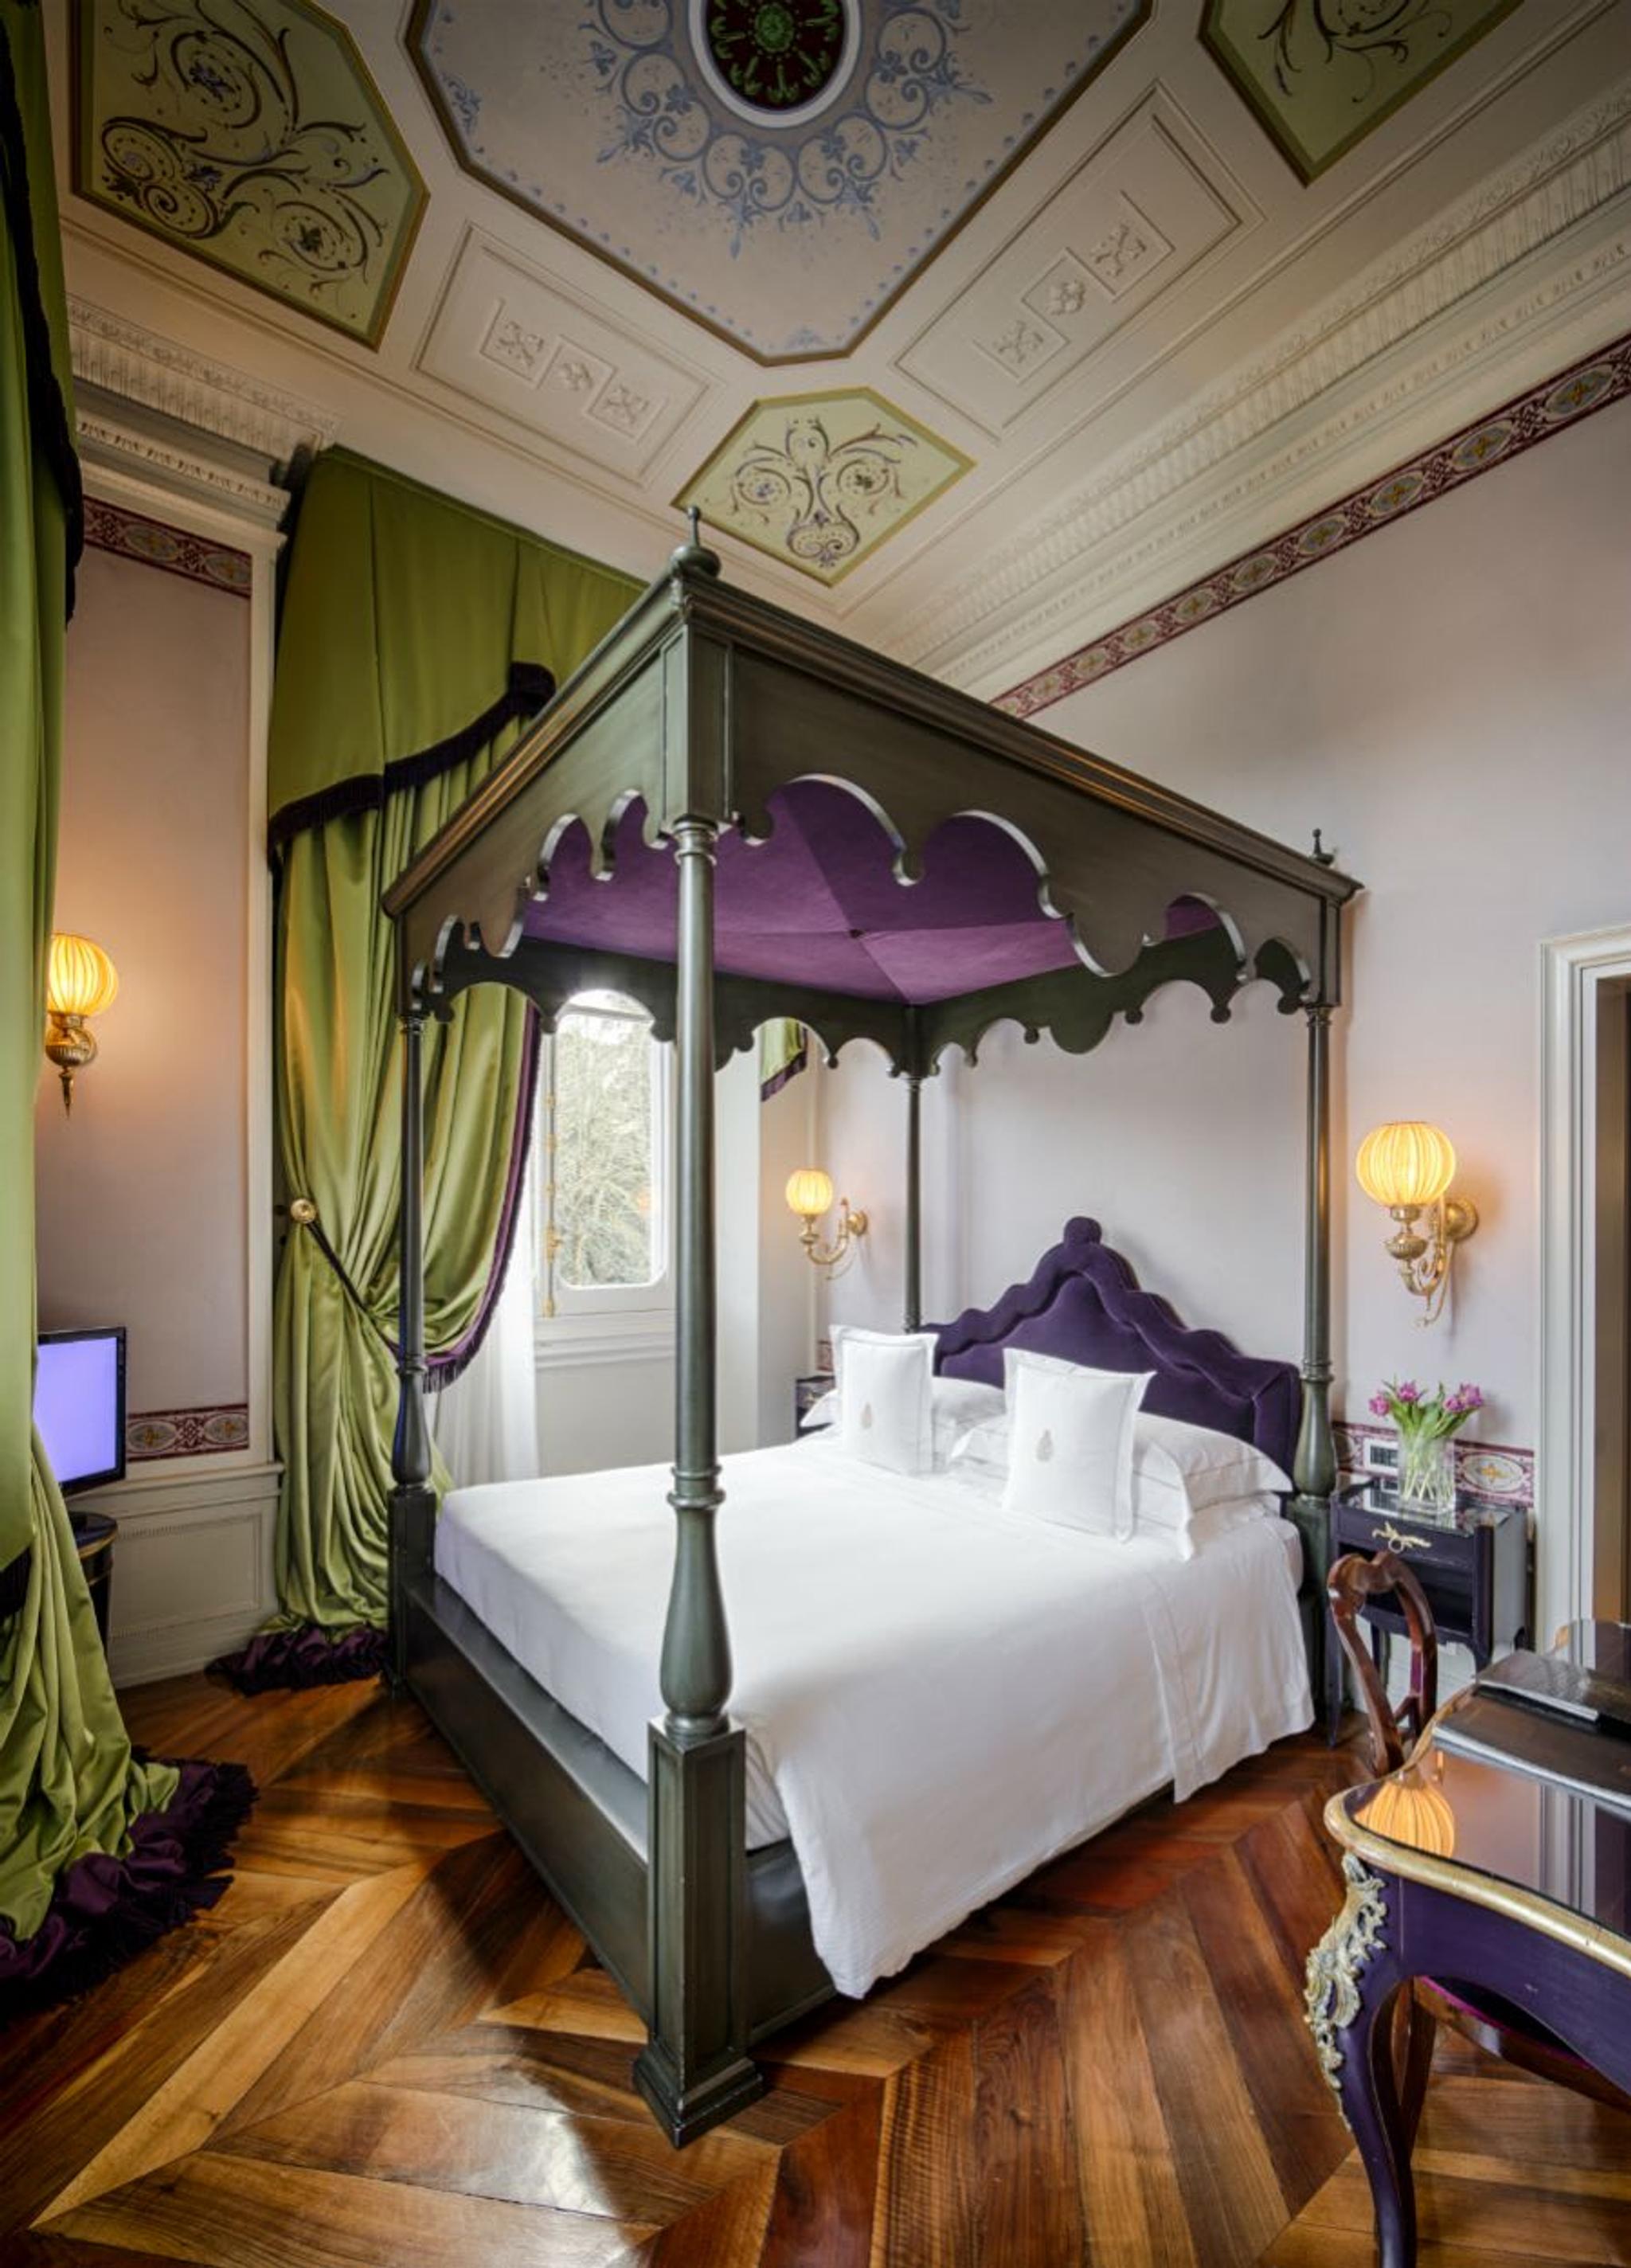 Vista de una elegante suite en tonos verdes y morados con una regia cama con dosel y preciosos frescos.